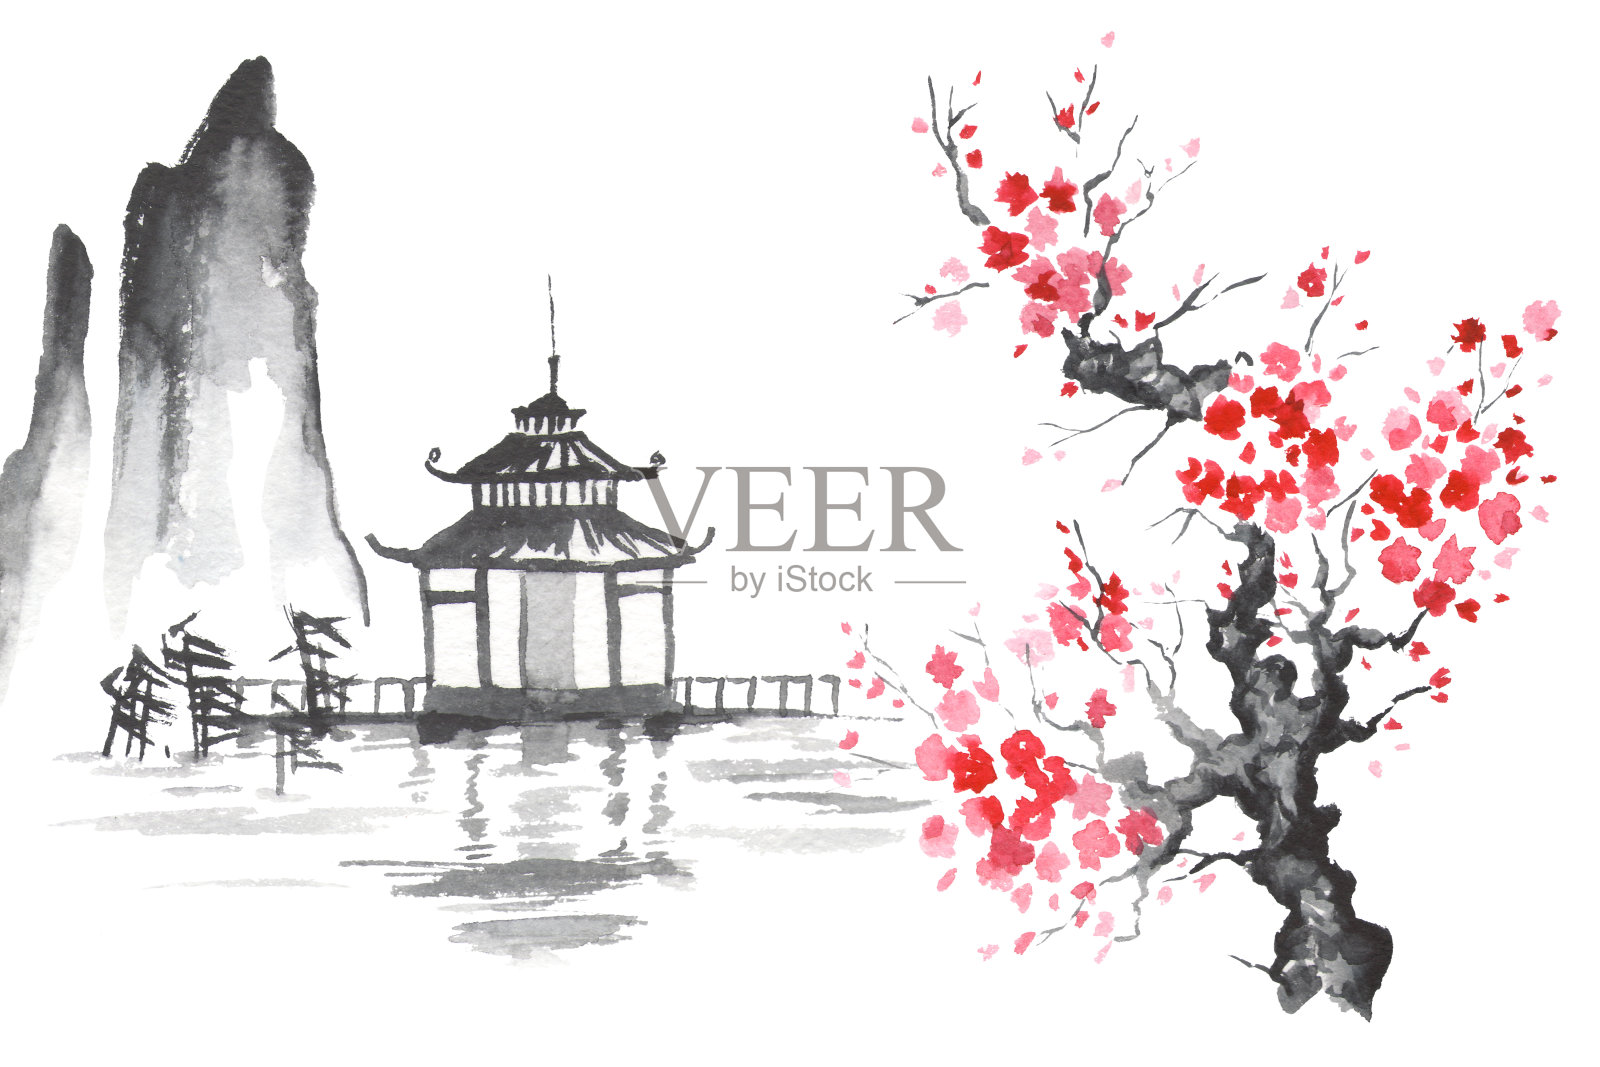 日本传统绘画Sumi-e艺术樱花寺插画图片素材